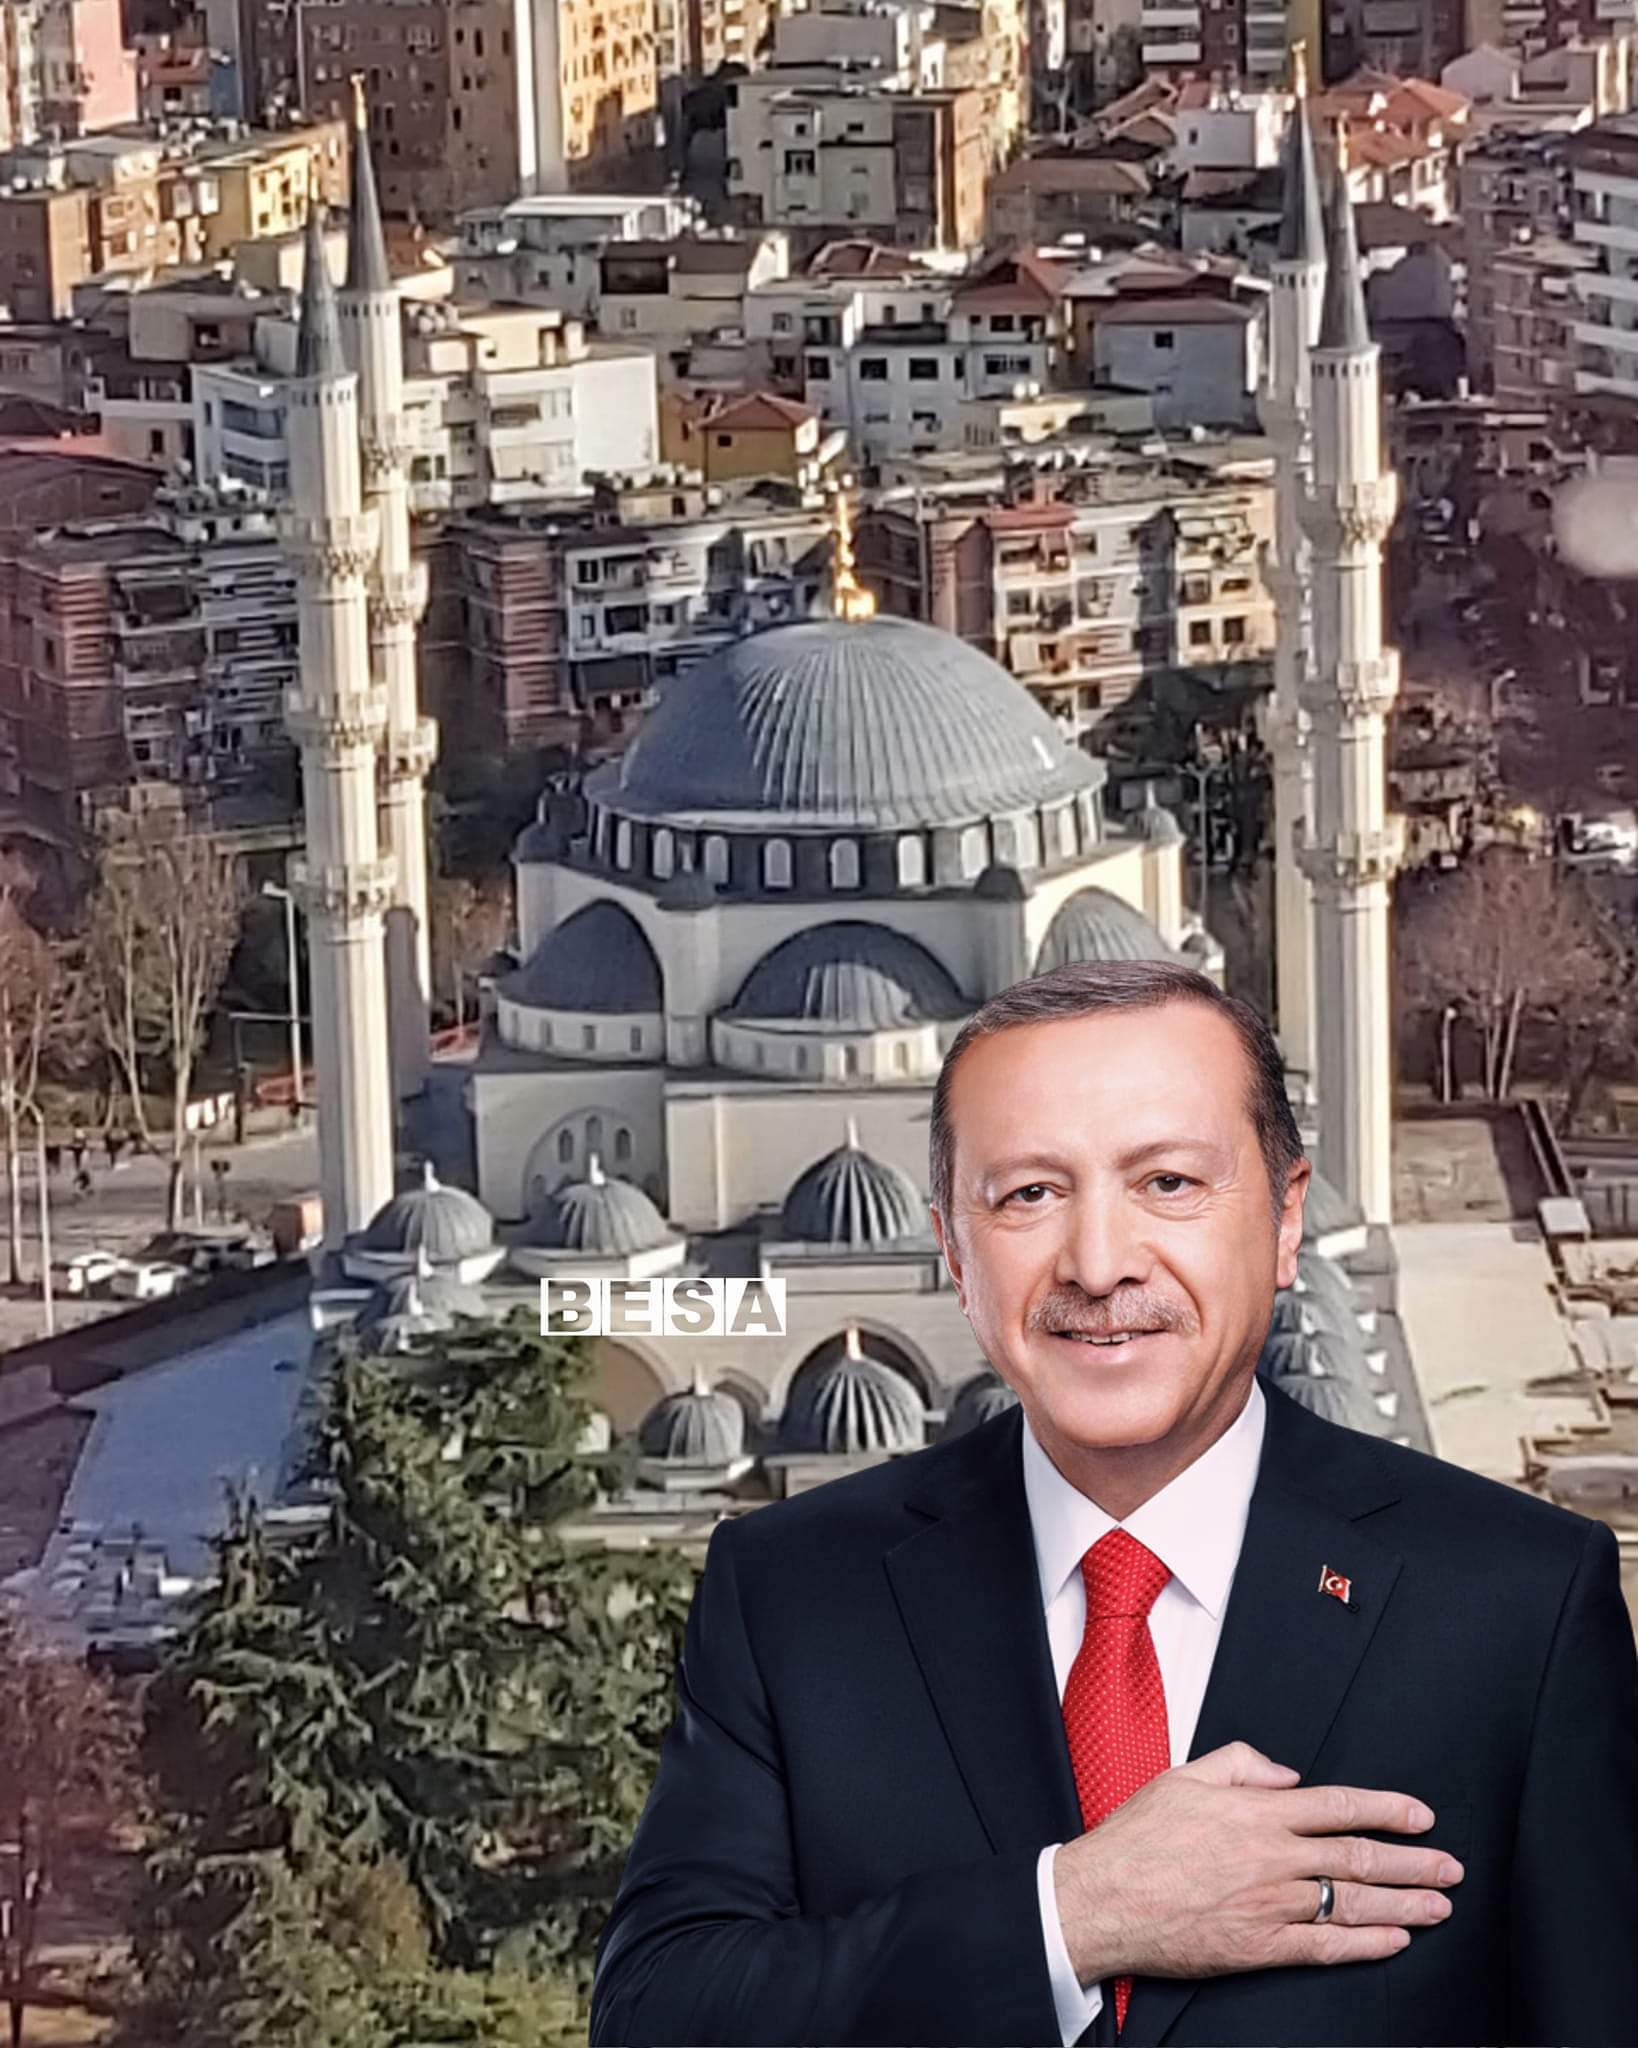 Presidenti Turk Erdoğan vjen në vizitë në Shqipëri në Natën e Kadrit, do të bëjë hapjen e Xhamisë së Namazxhahut në Tiranë